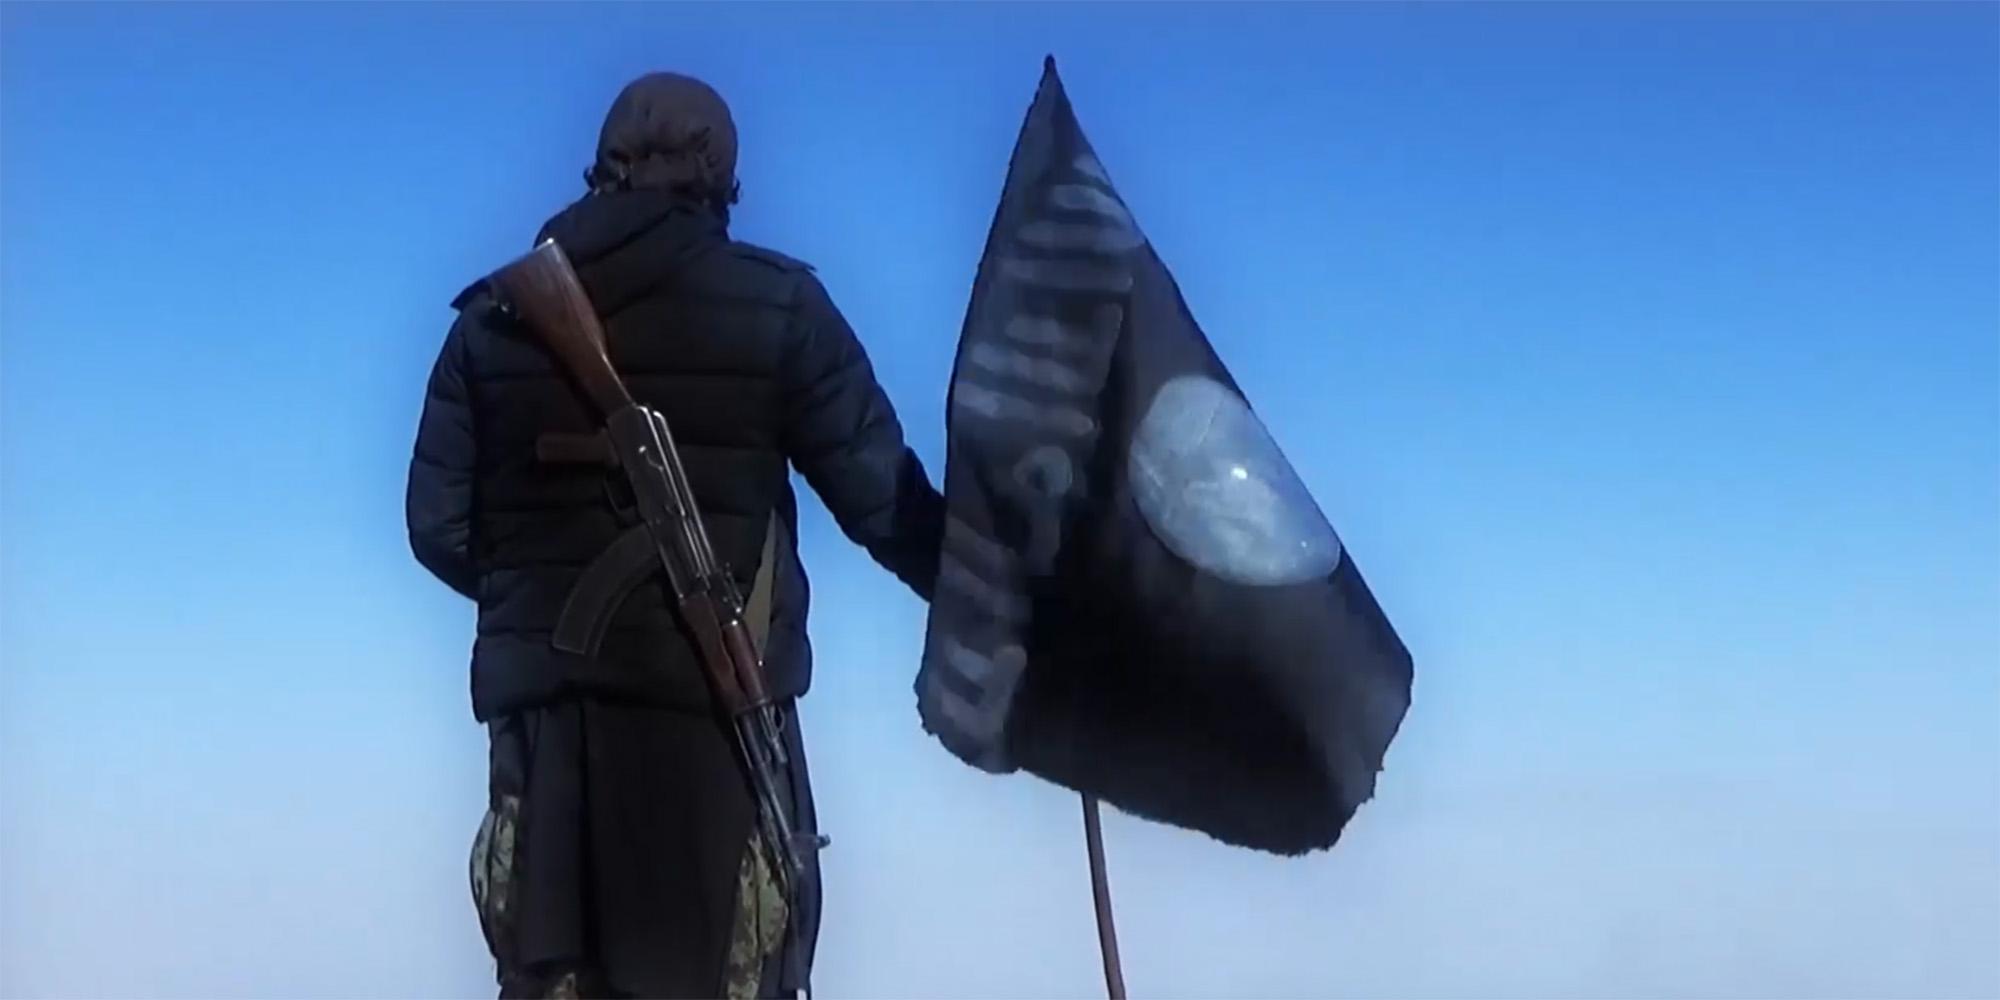 لماذا يسعى تنظيم داعش خراسان إلى استقطاب الطاجيك؟